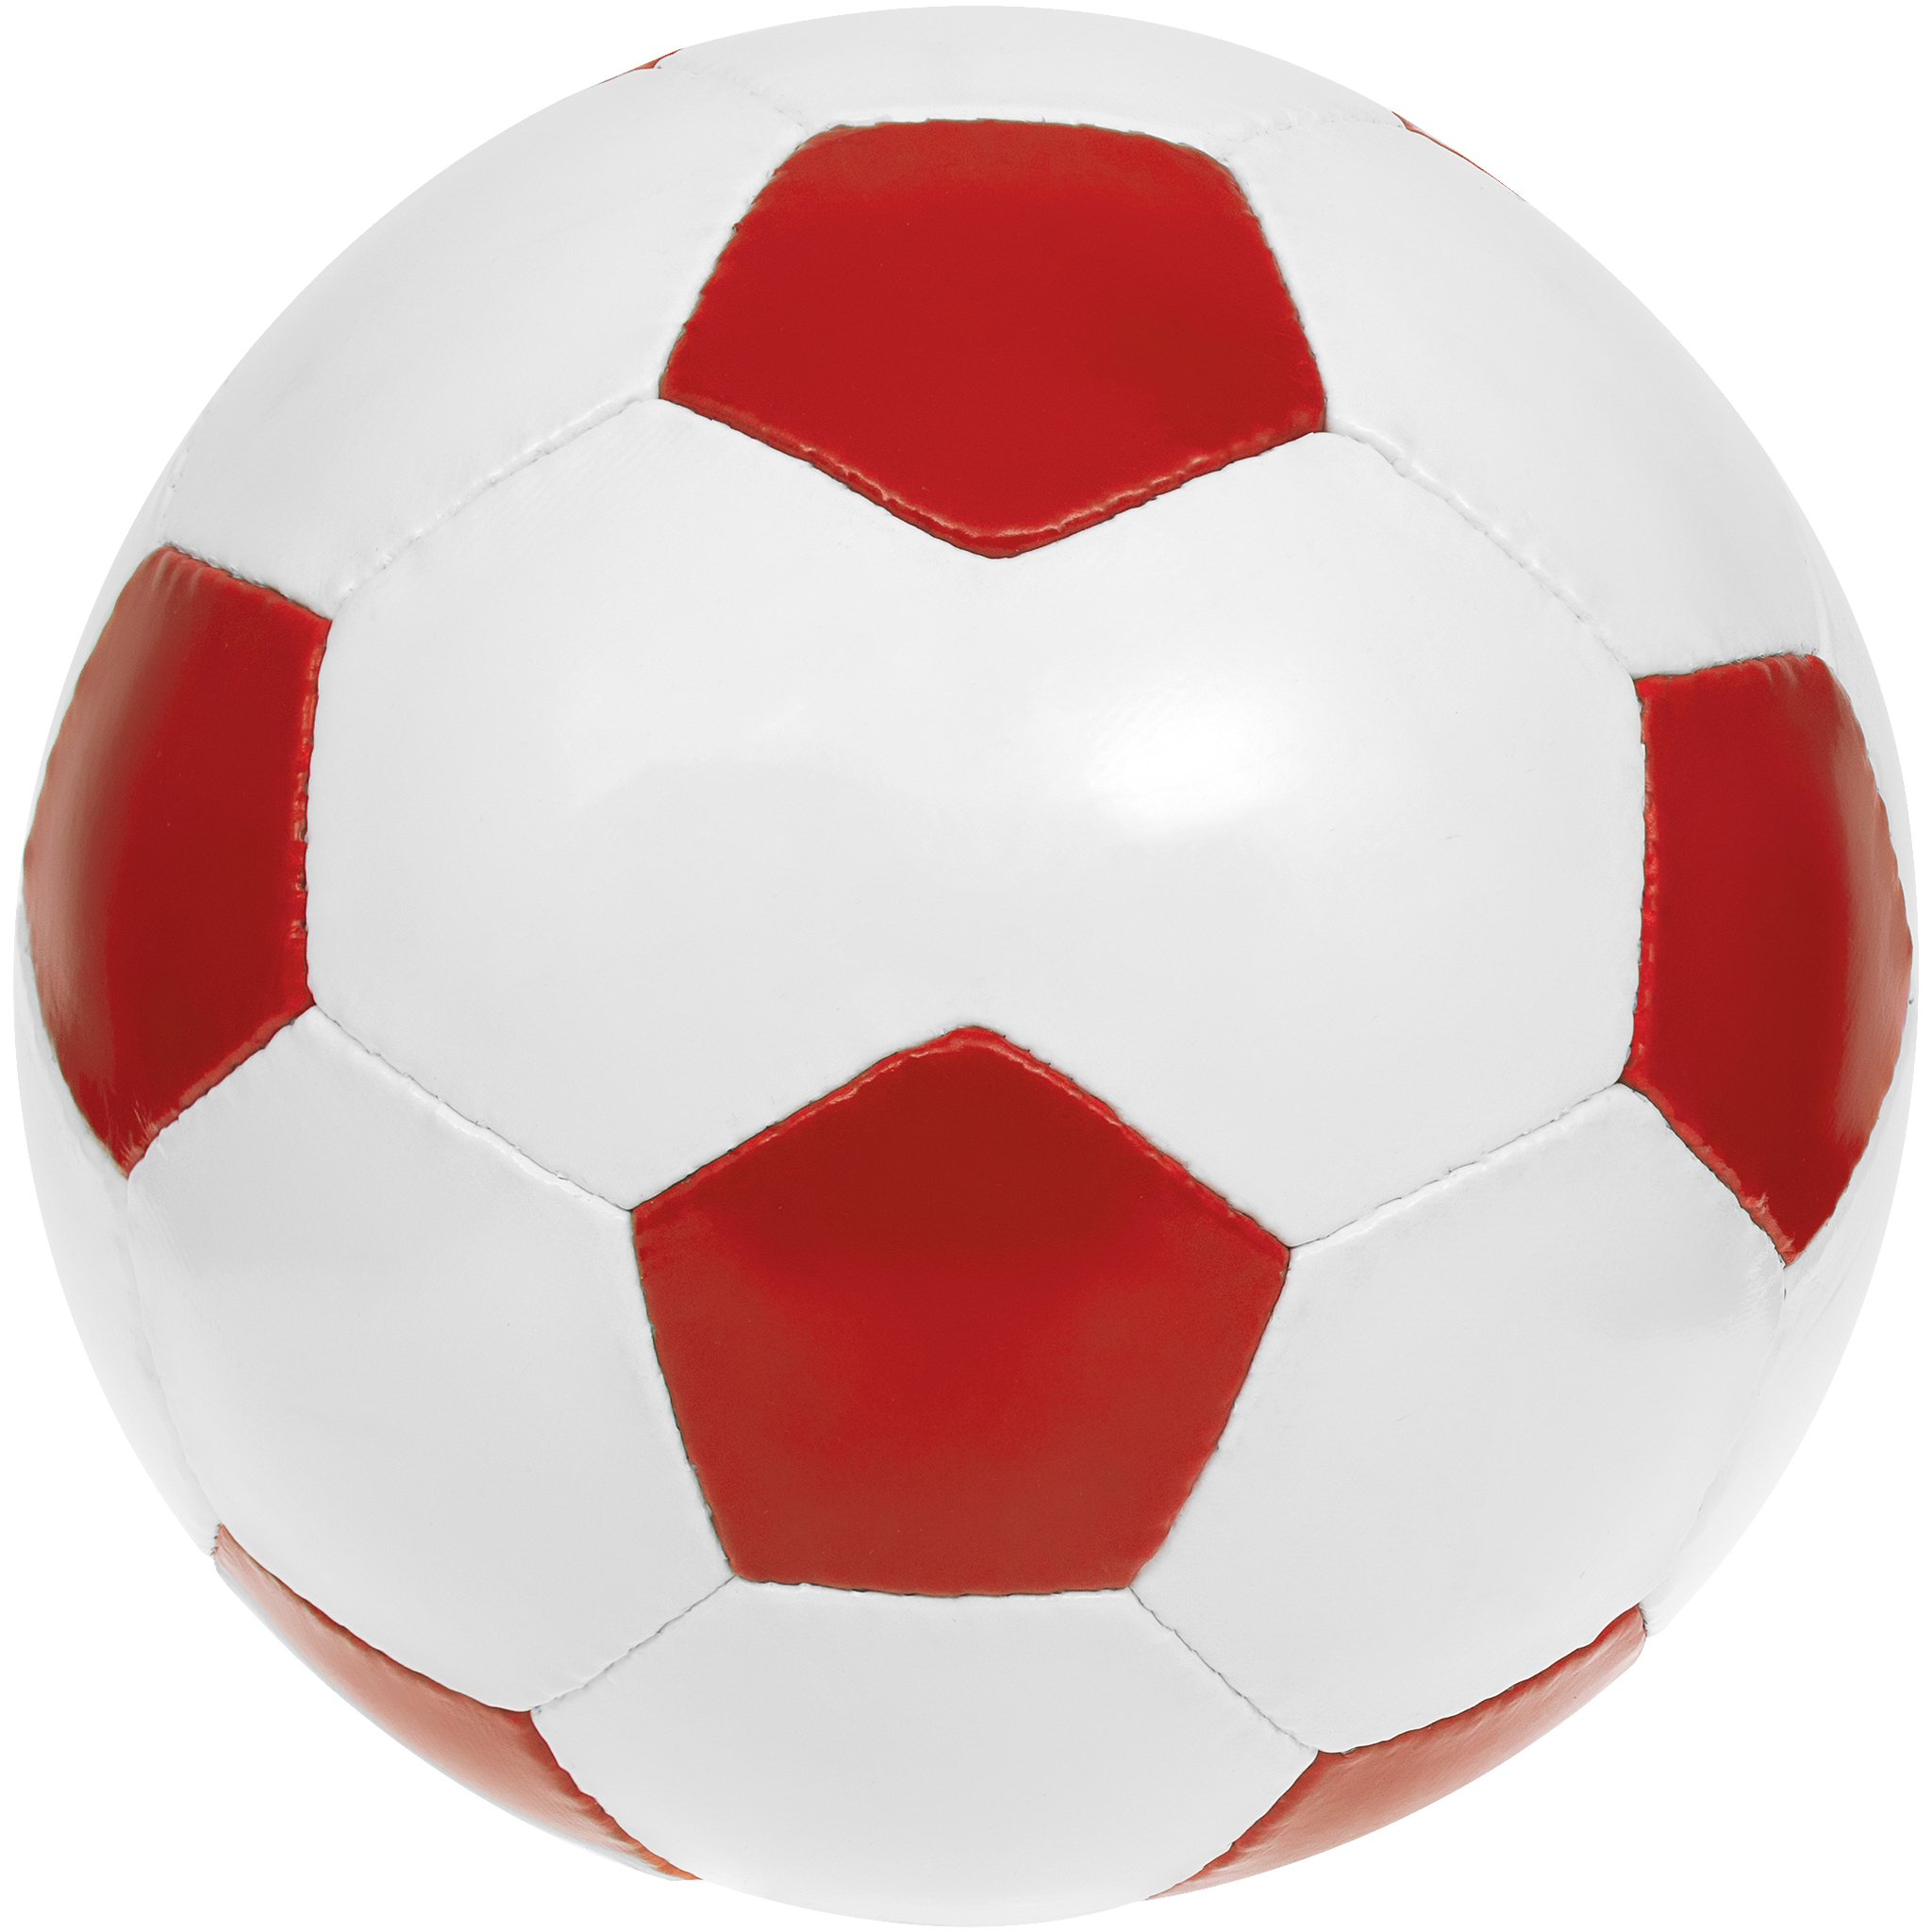 Карточка ball. Мяч. Красный мяч. Мяч "футбол". Футбольный мячик.